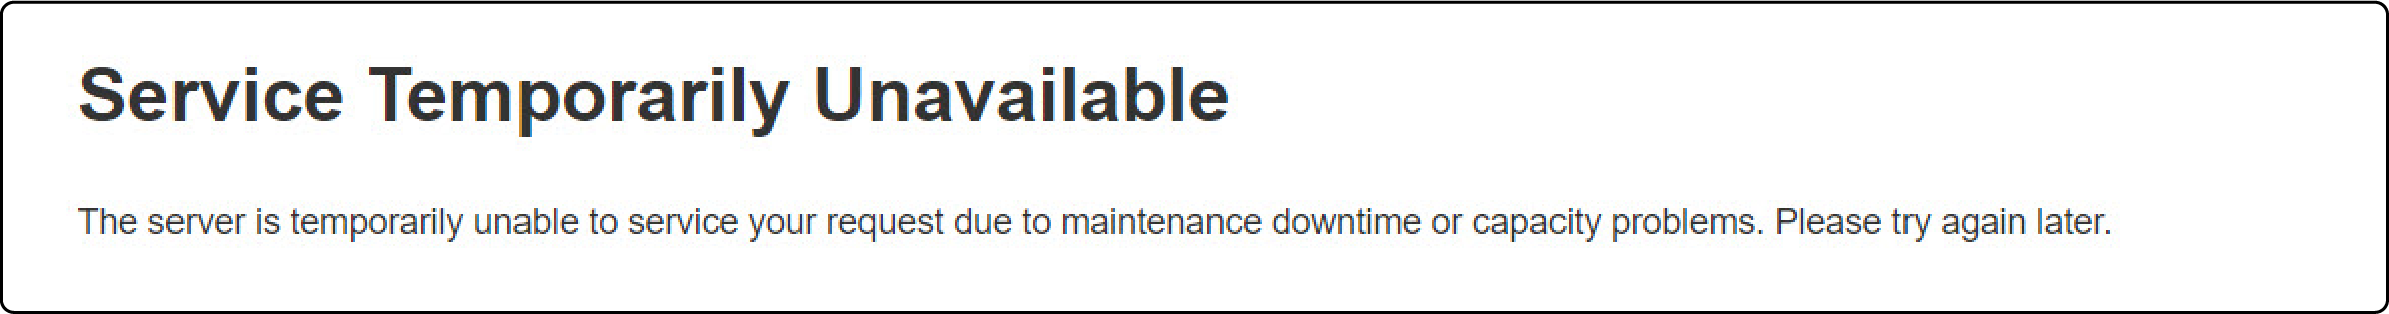 503 Service Temporarily Unavailable Error in Magento